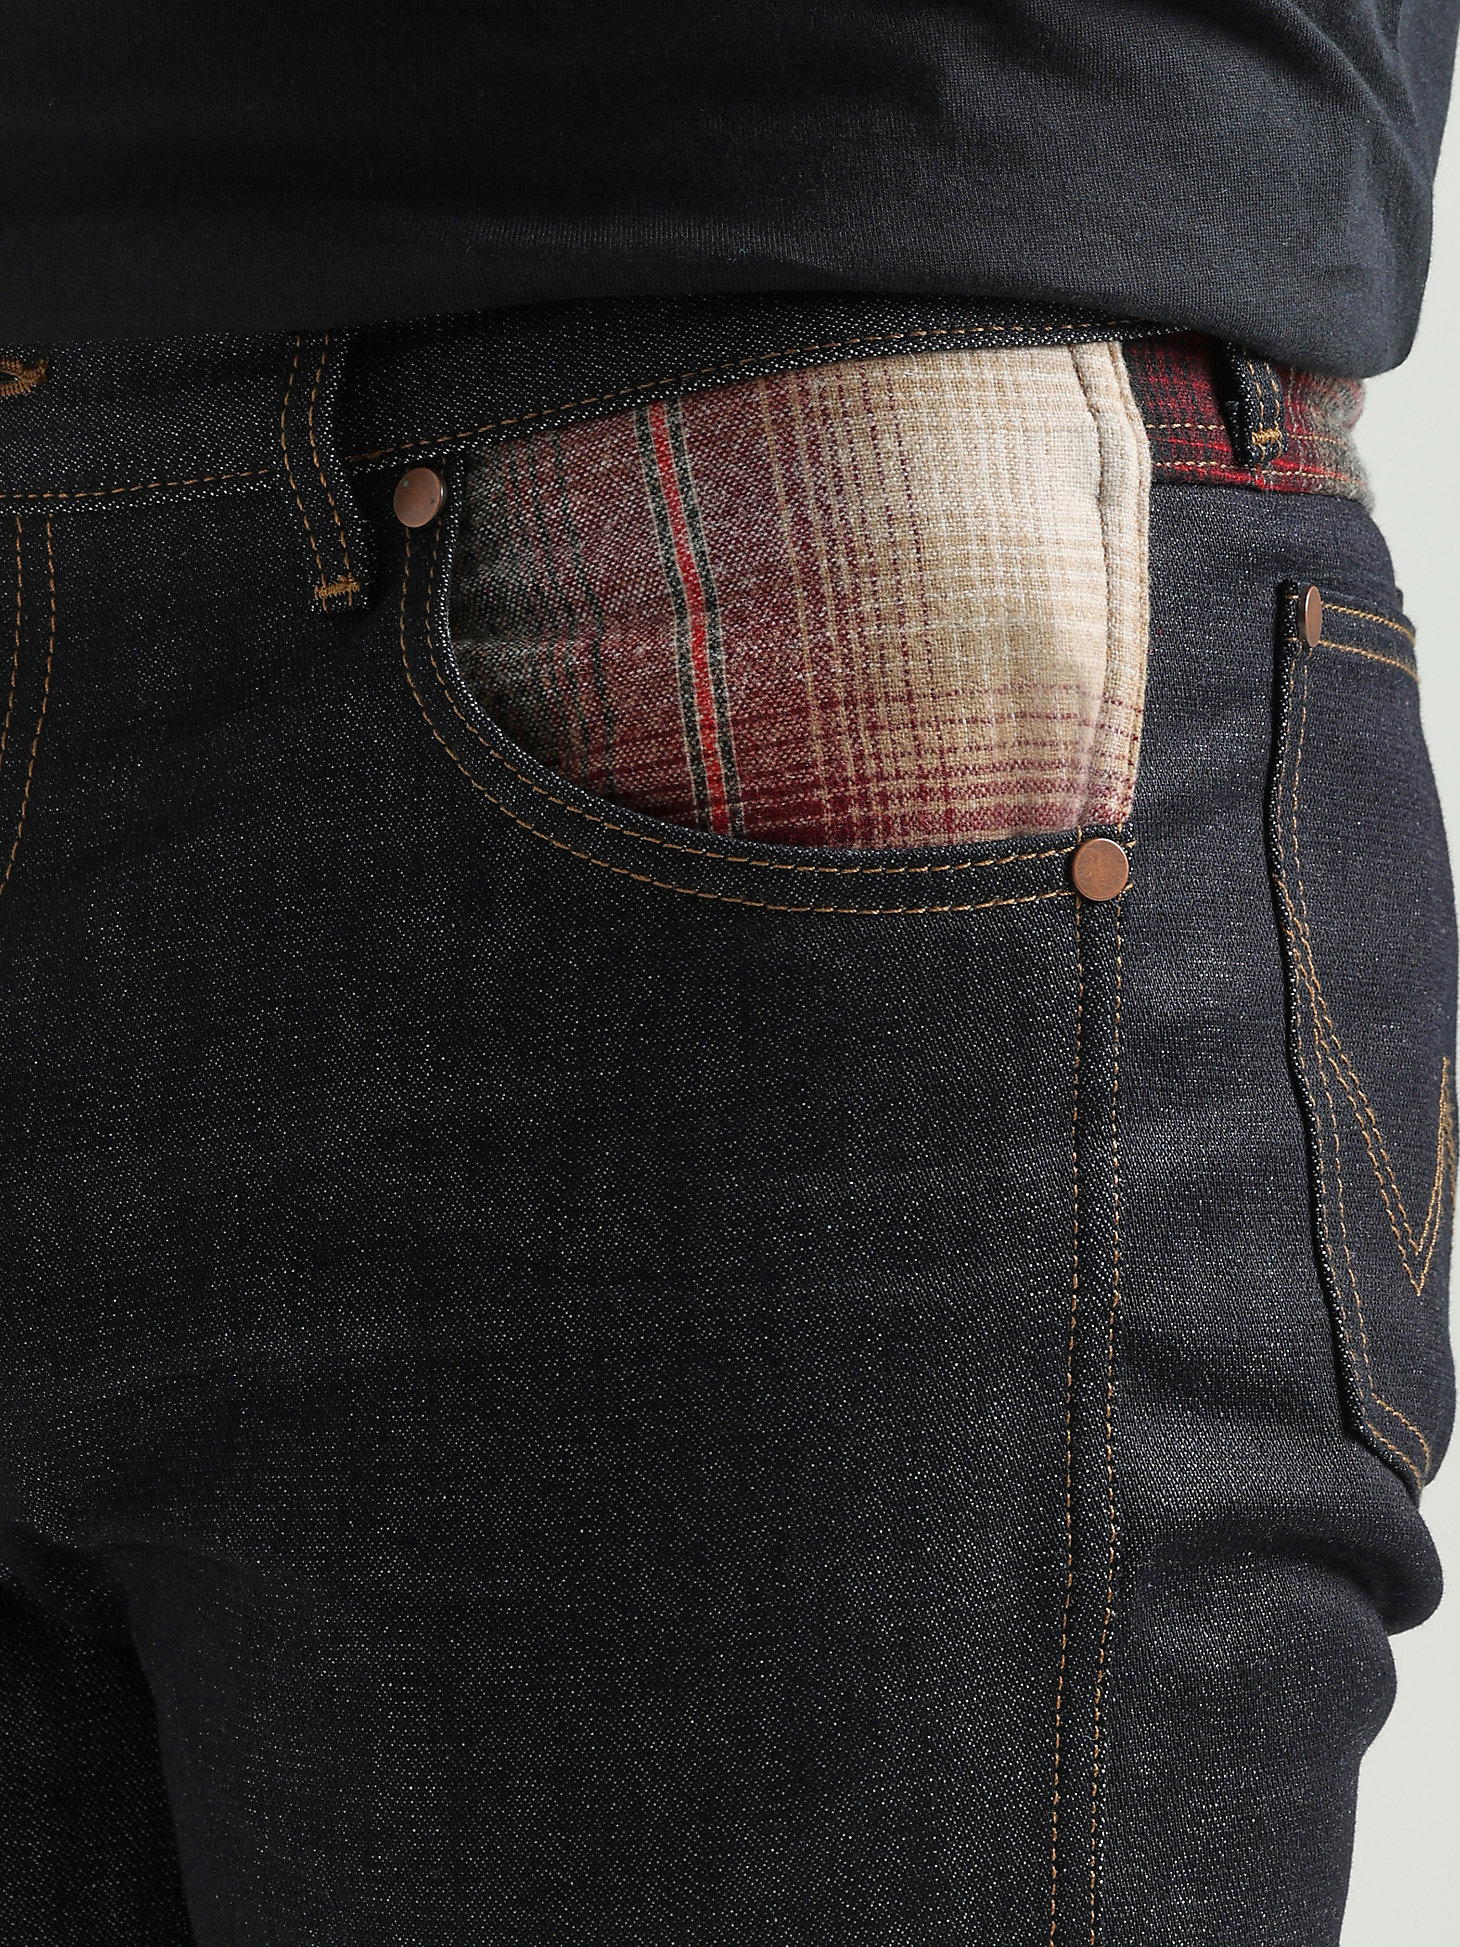 Wrangler x Pendleton Men's Slim Straight Jean in Mid Wash alternative view 4